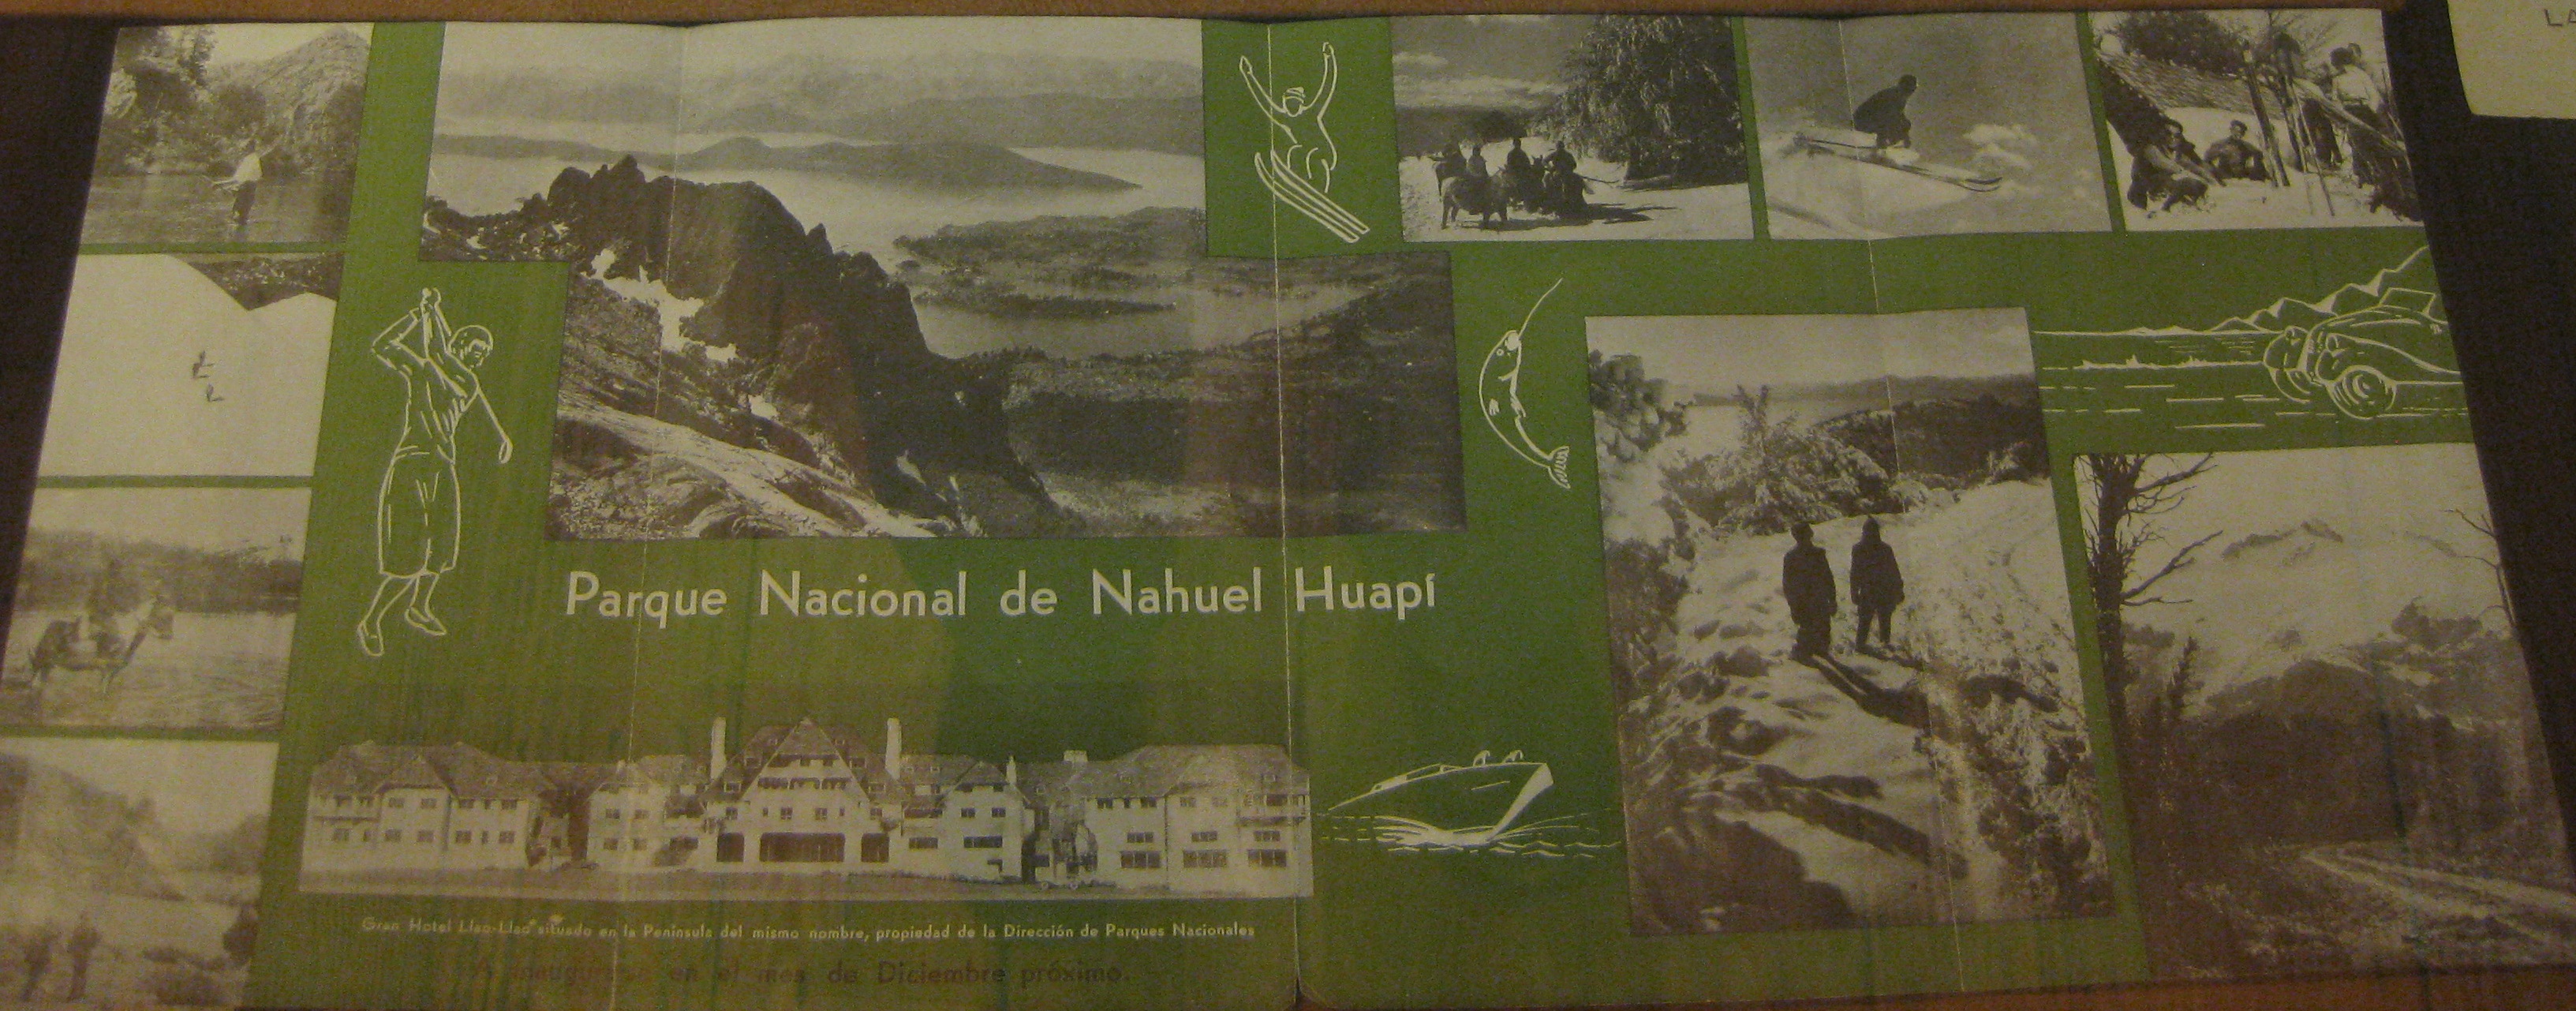 NahuelHuapiBrochure1934museopatagonia 076